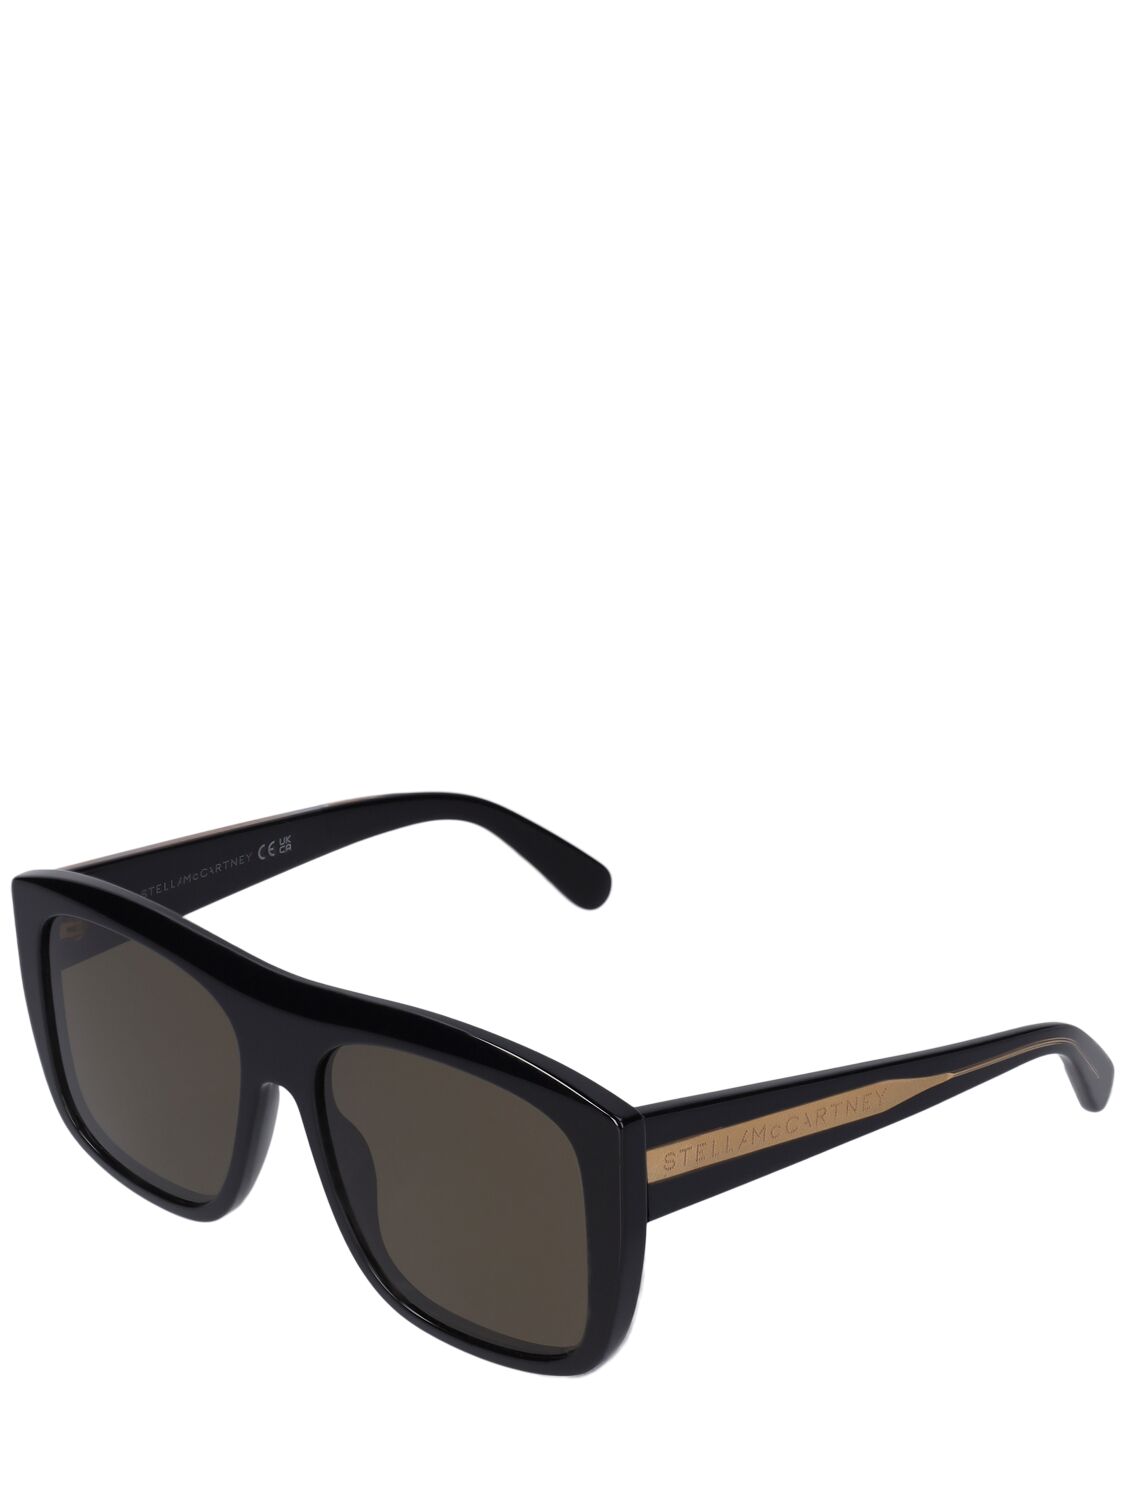 Shop Stella Mccartney Squared Acetate Sunglasses In Black,green